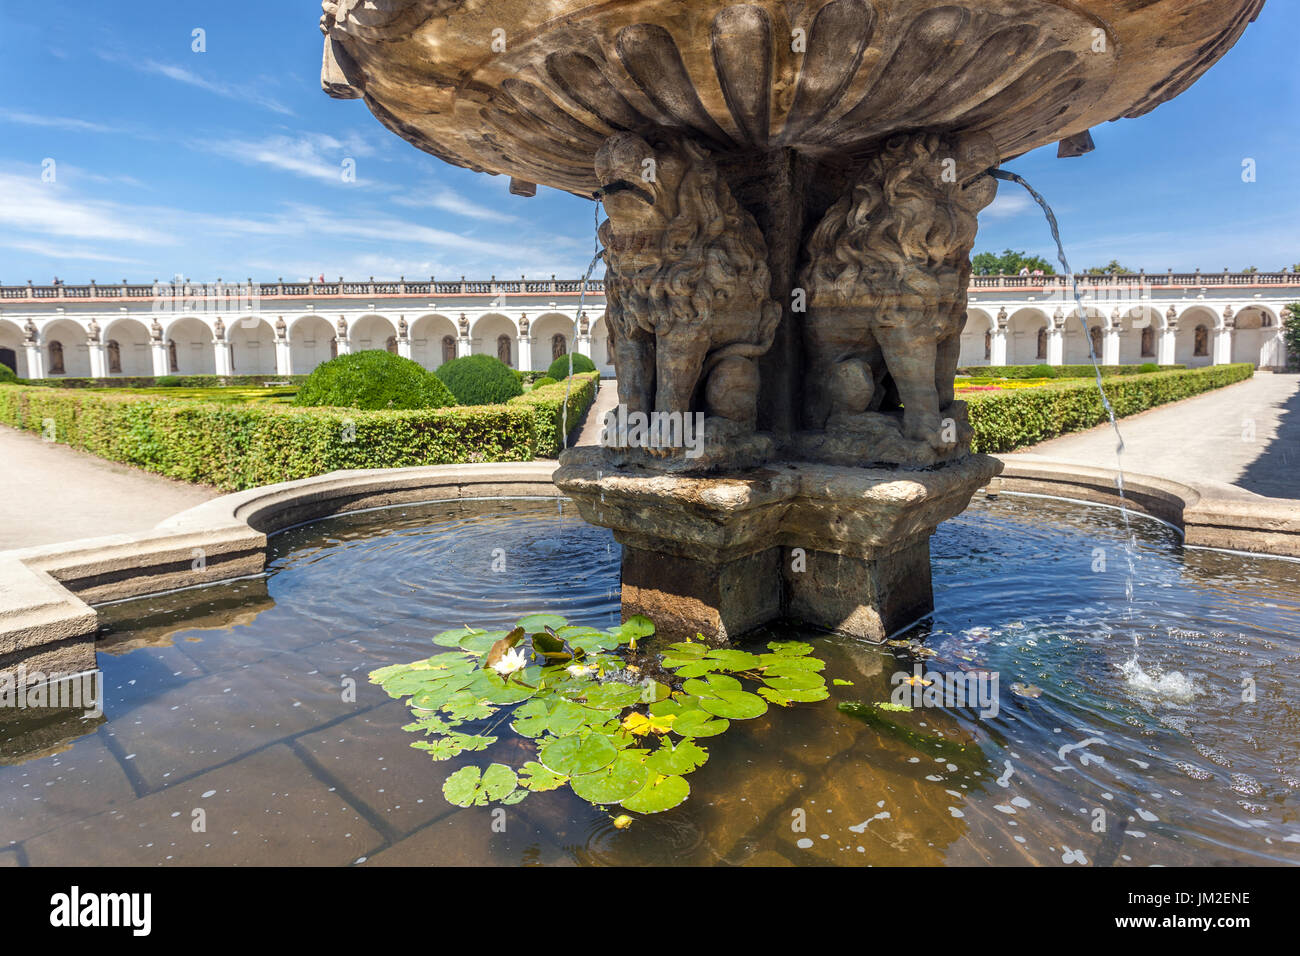 Jardin Kromeriz, fontaine baroque dans le jardin de plaisir Kromeriz République Tchèque site classé au patrimoine mondial de l'UNESCO Banque D'Images